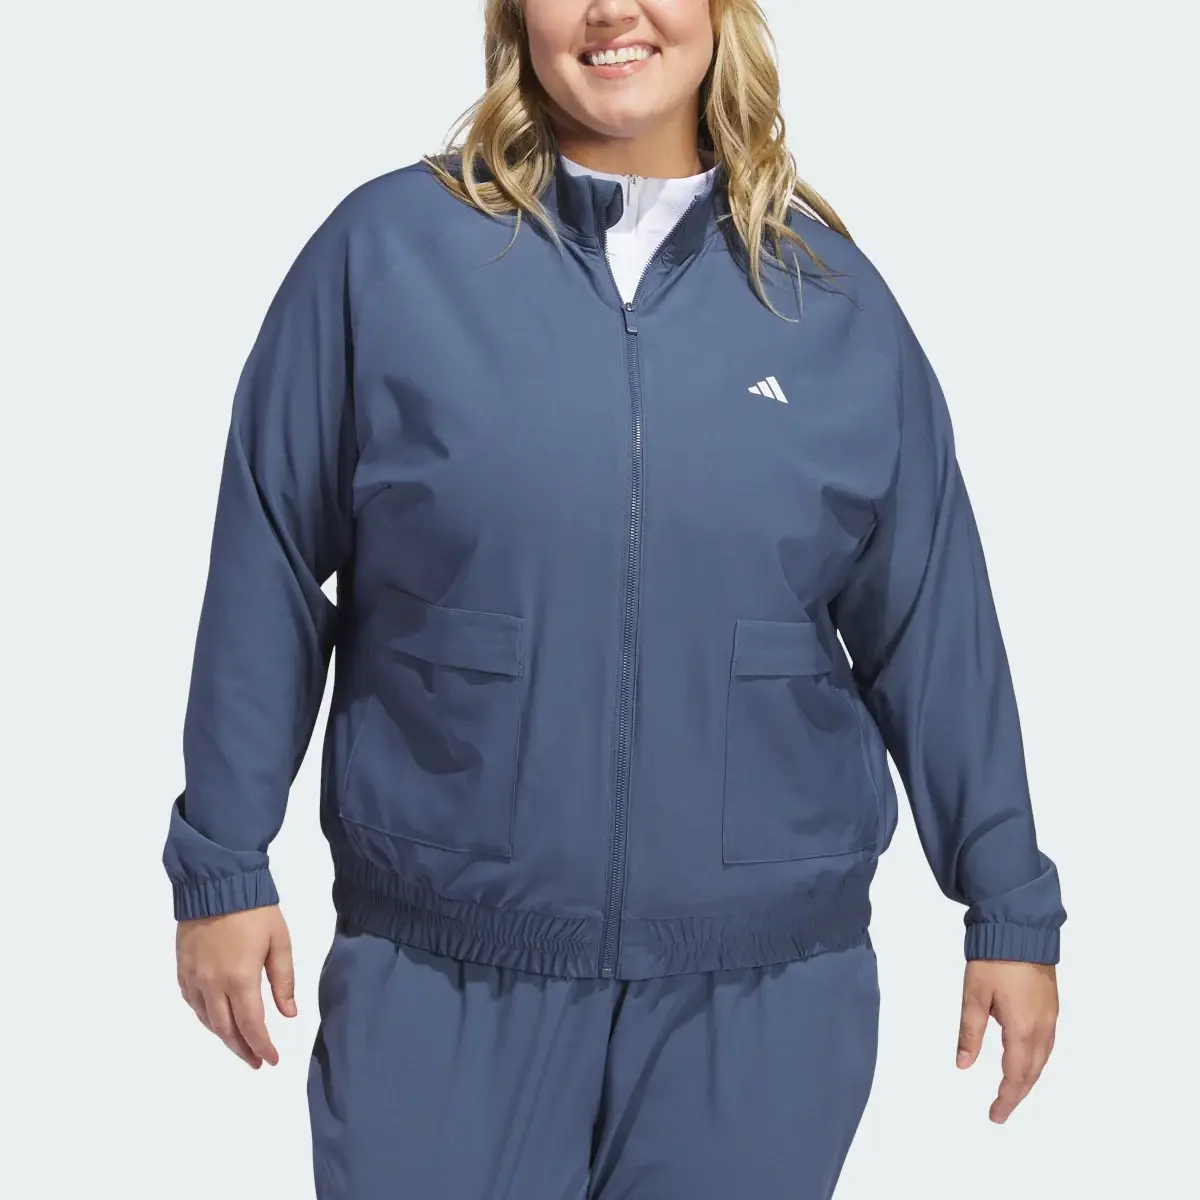 Adidas Women's Ultimate365 Novelty Jacket (Plus Size). 1